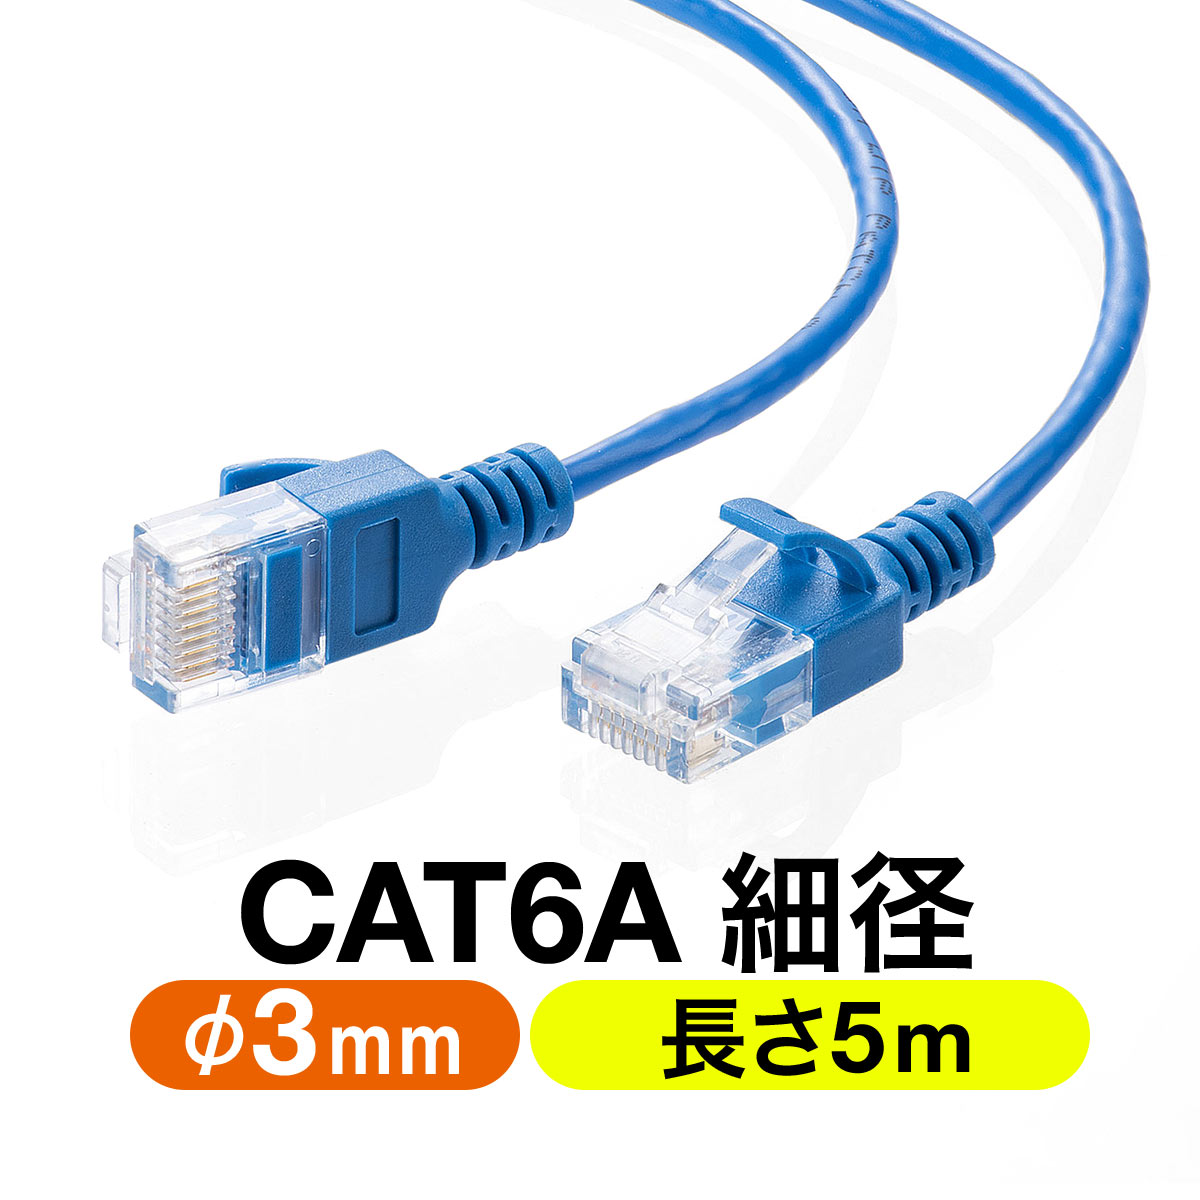 ツメ折れ防止 細径LANケーブル CAT6A 5